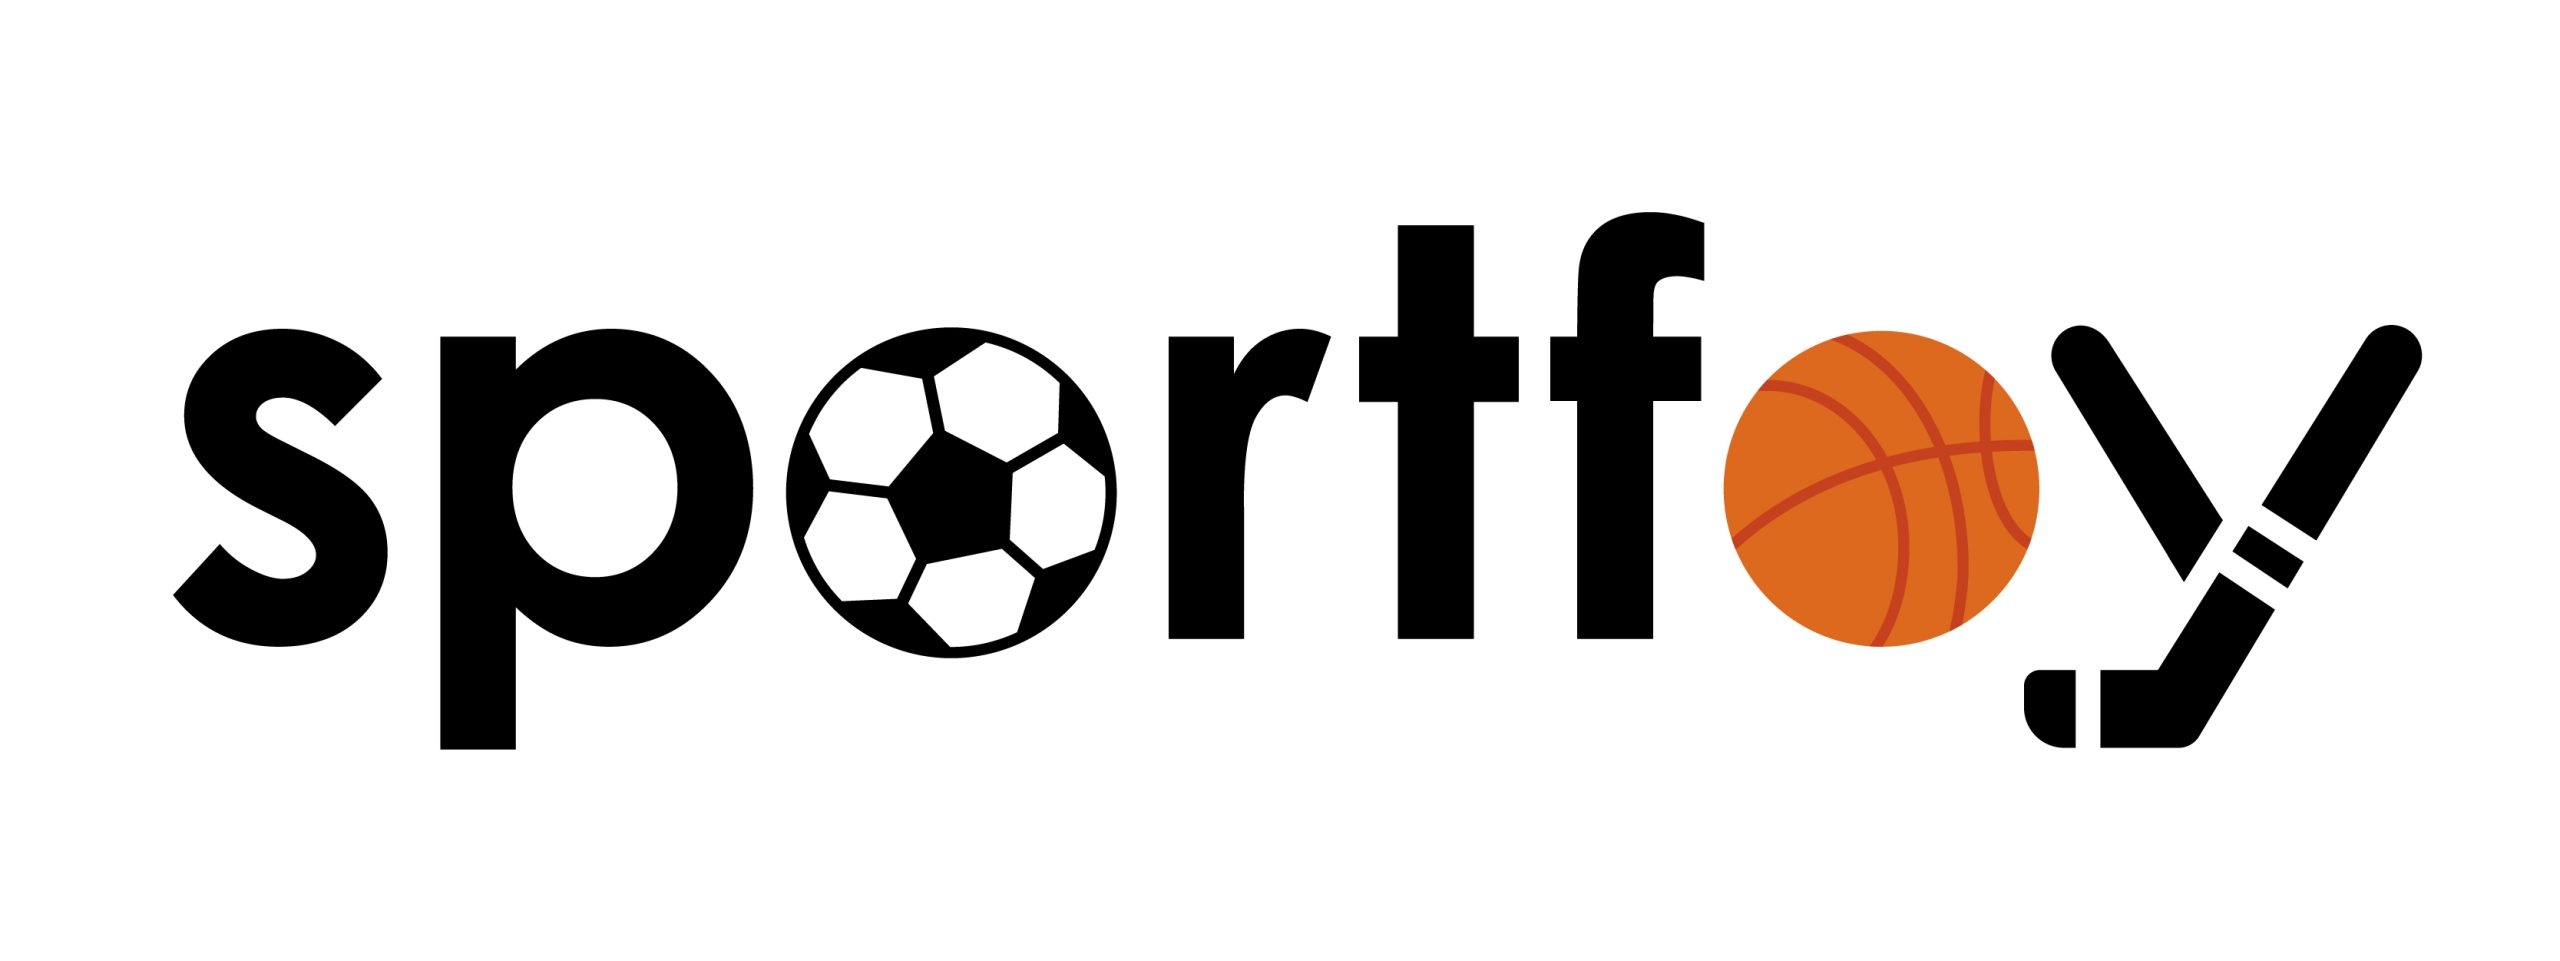 sportfoy.com logo